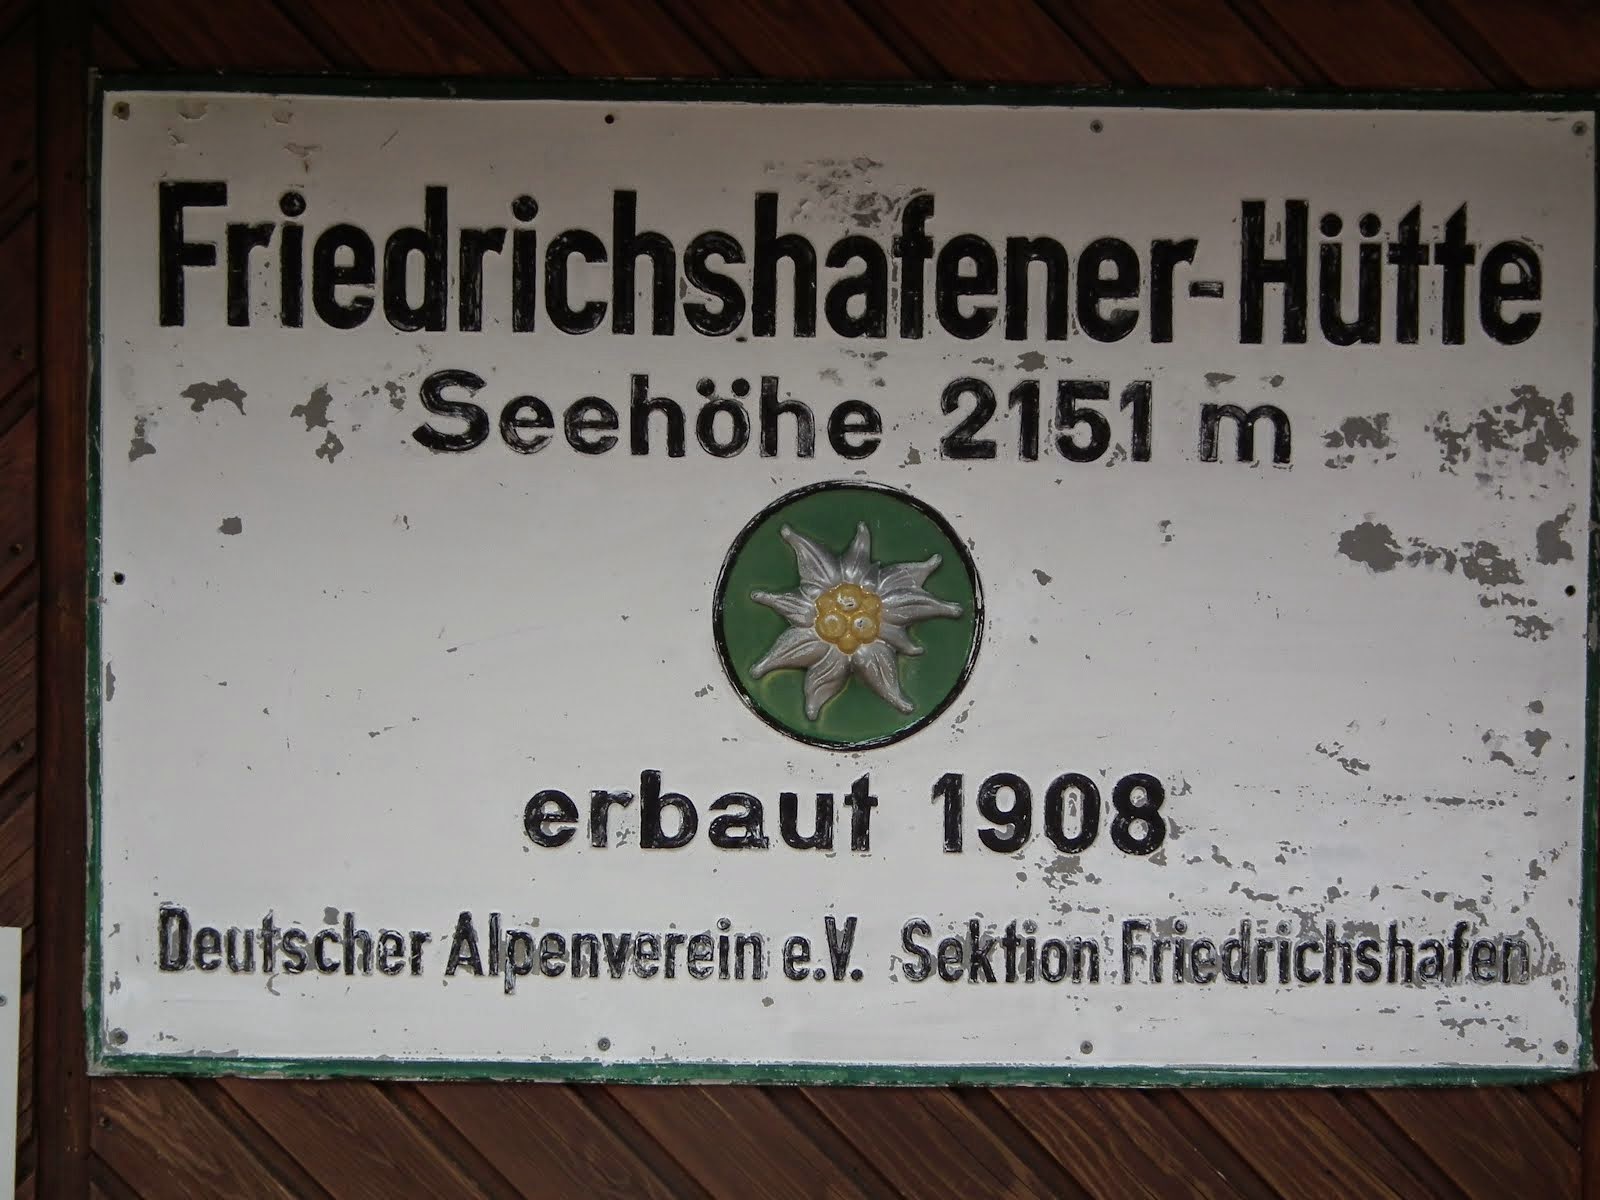 Friederichshafenerhutte